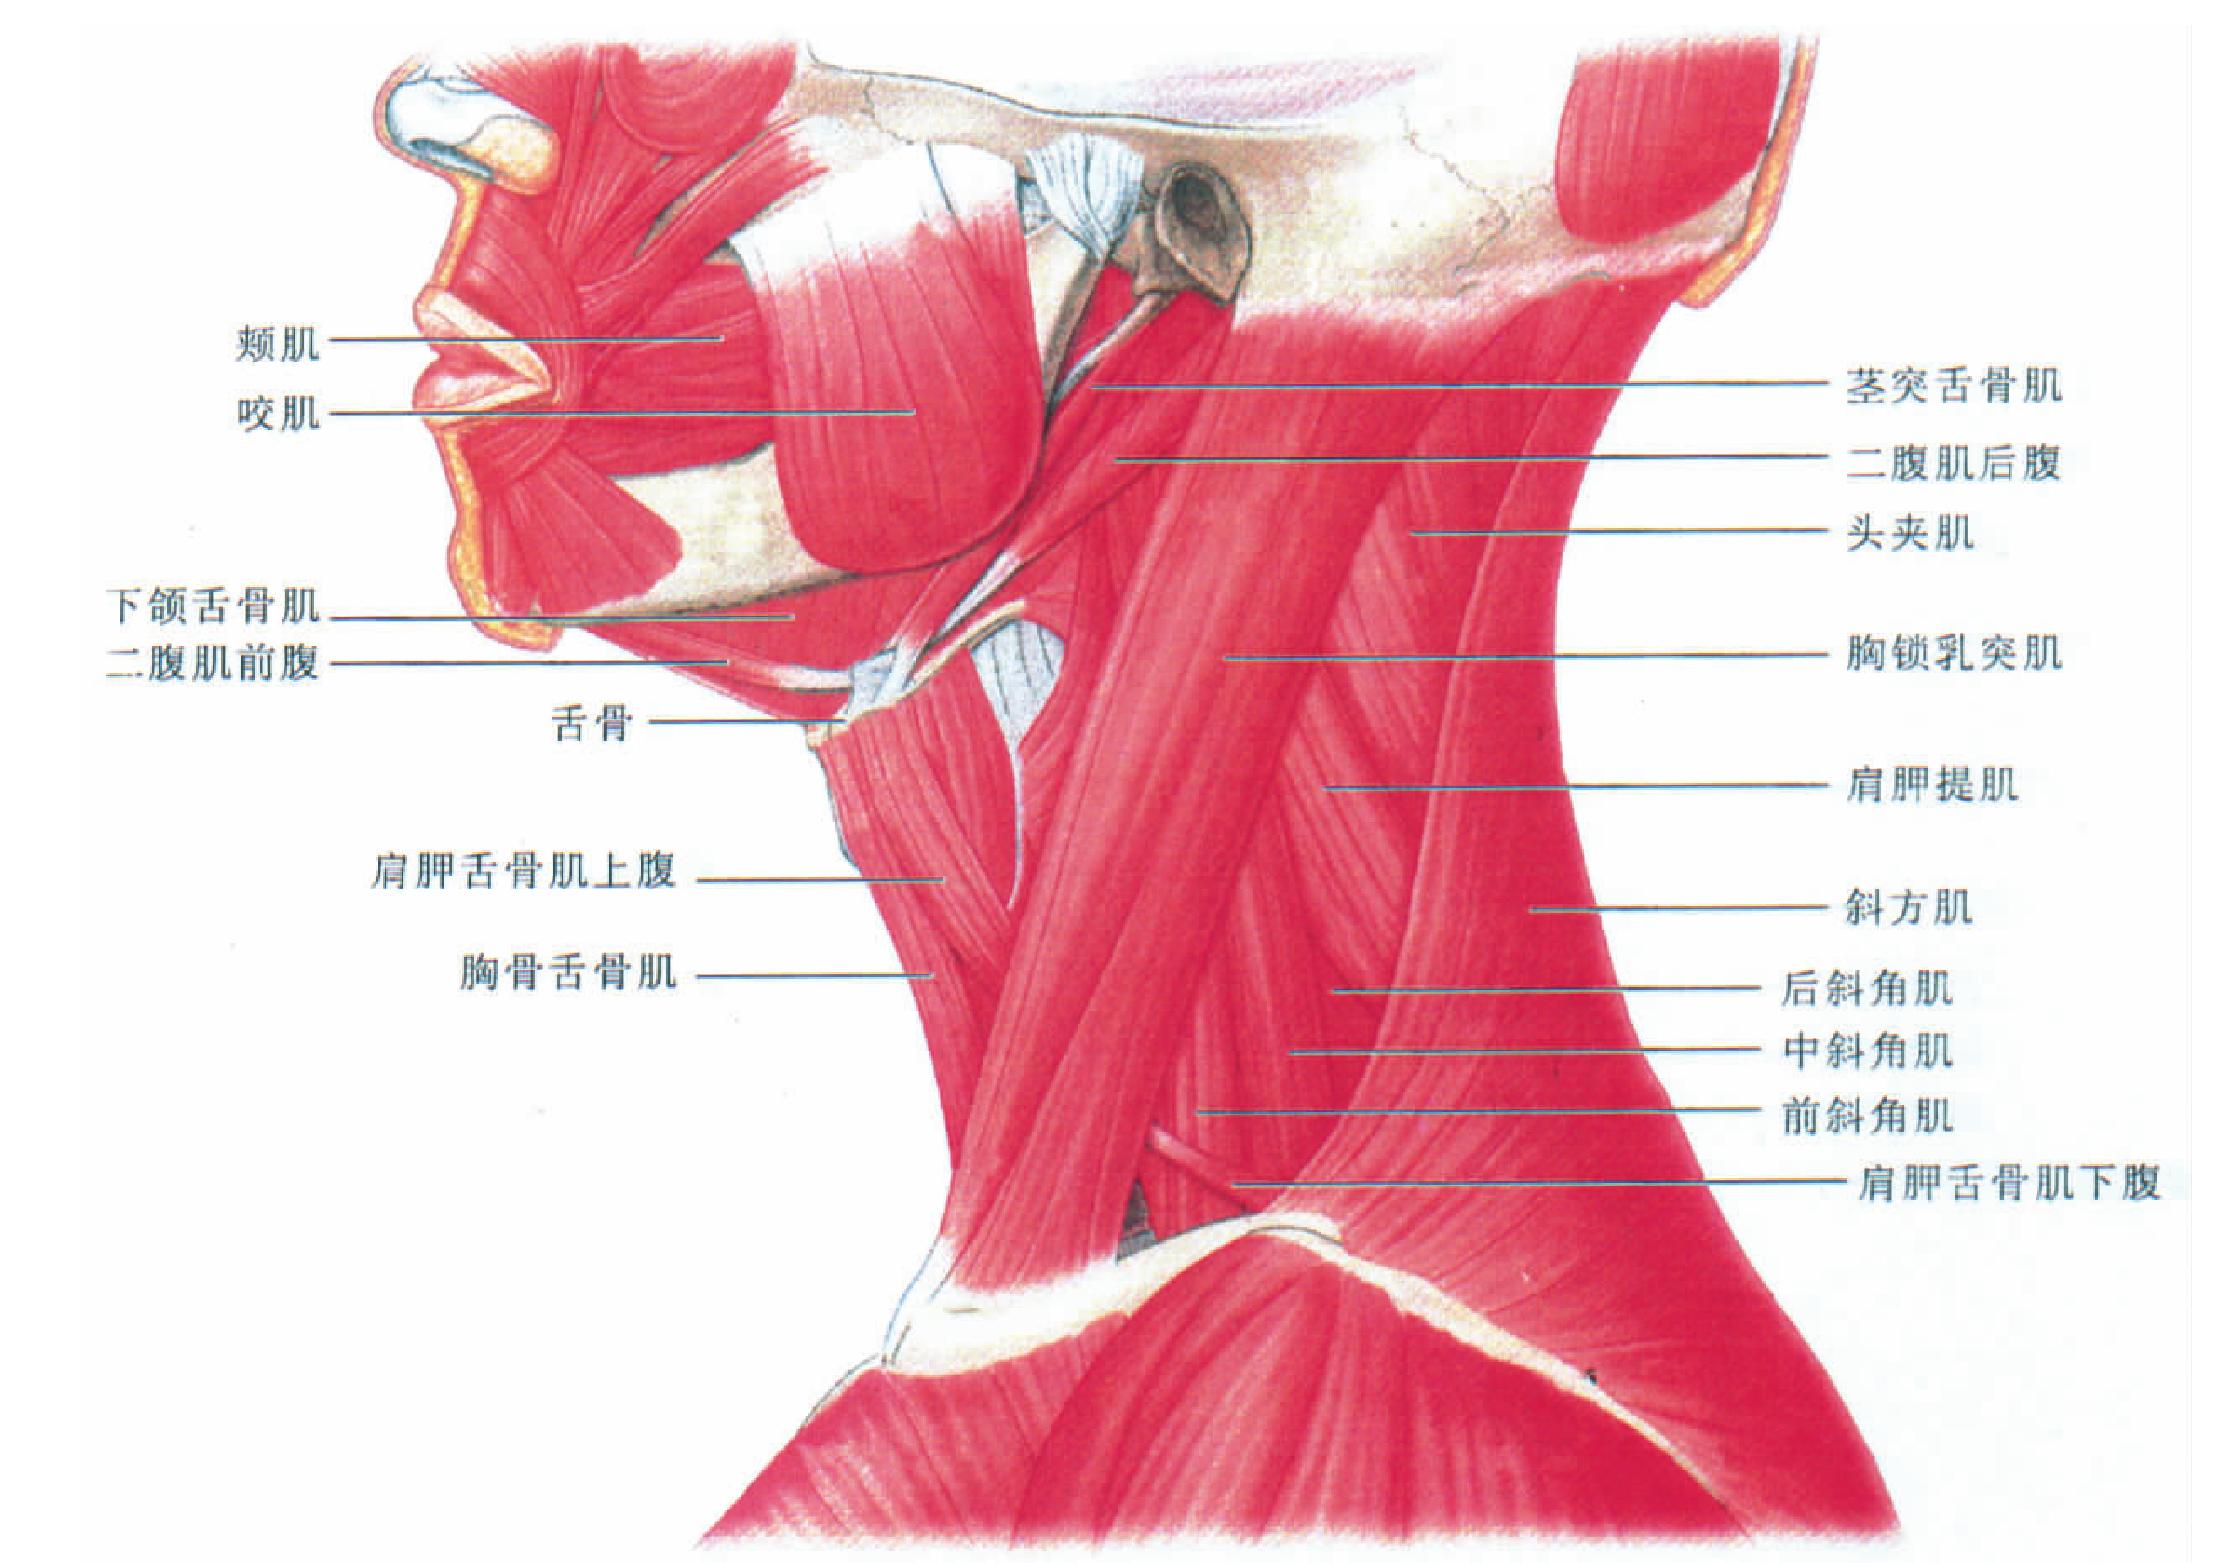 图15-290 颈部横断面筋膜间隙-基础医学-医学